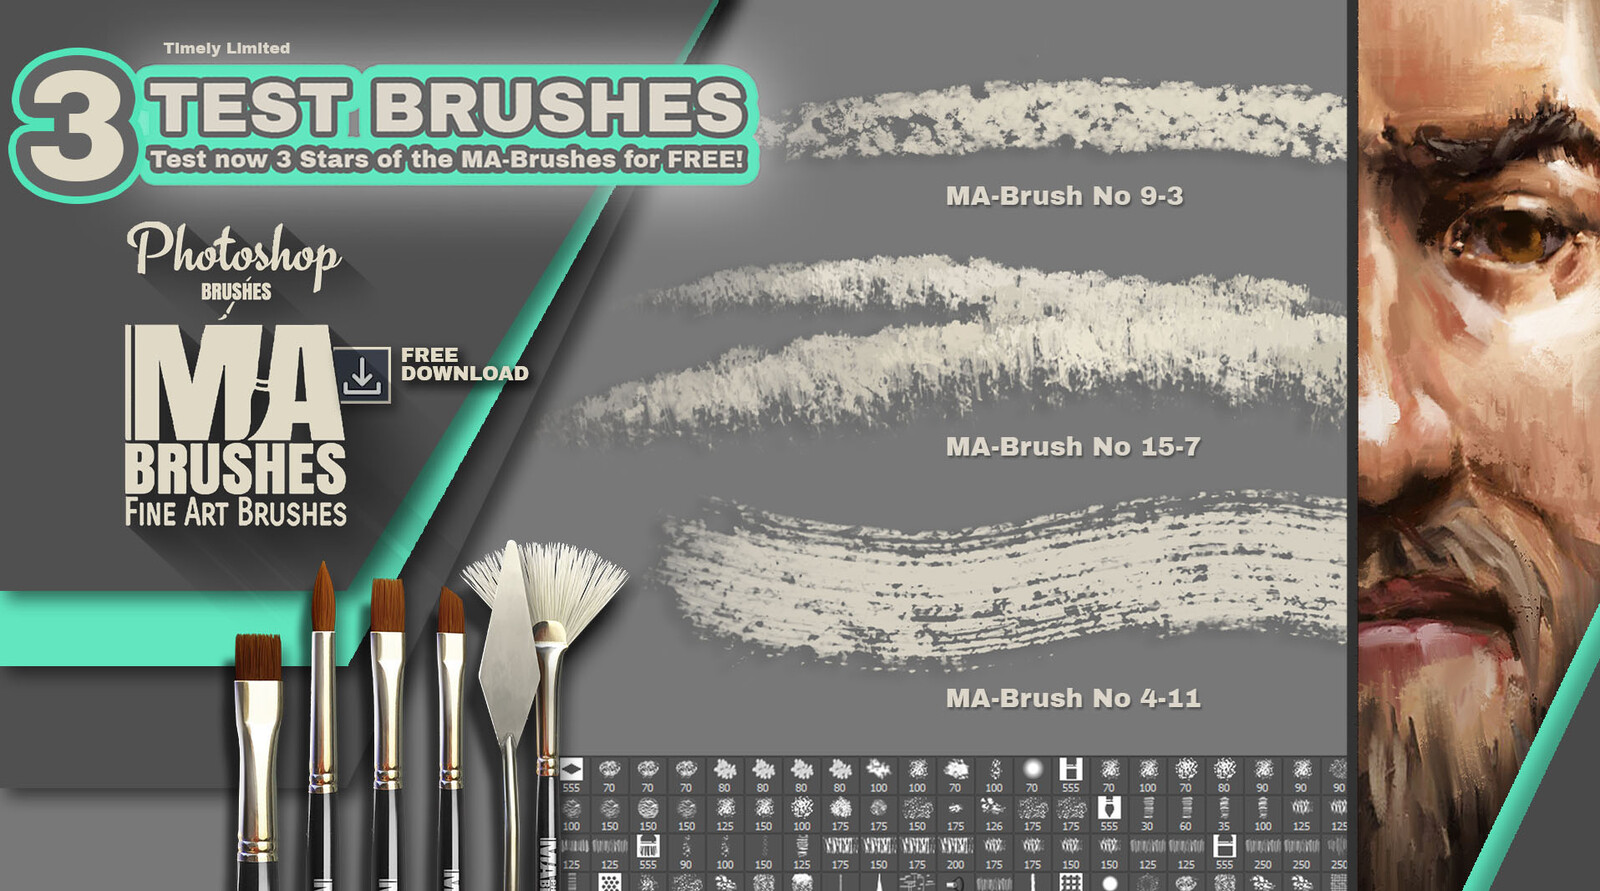 MA-Brushes - FREE Download 3 amazing Test Brushes Photoshop